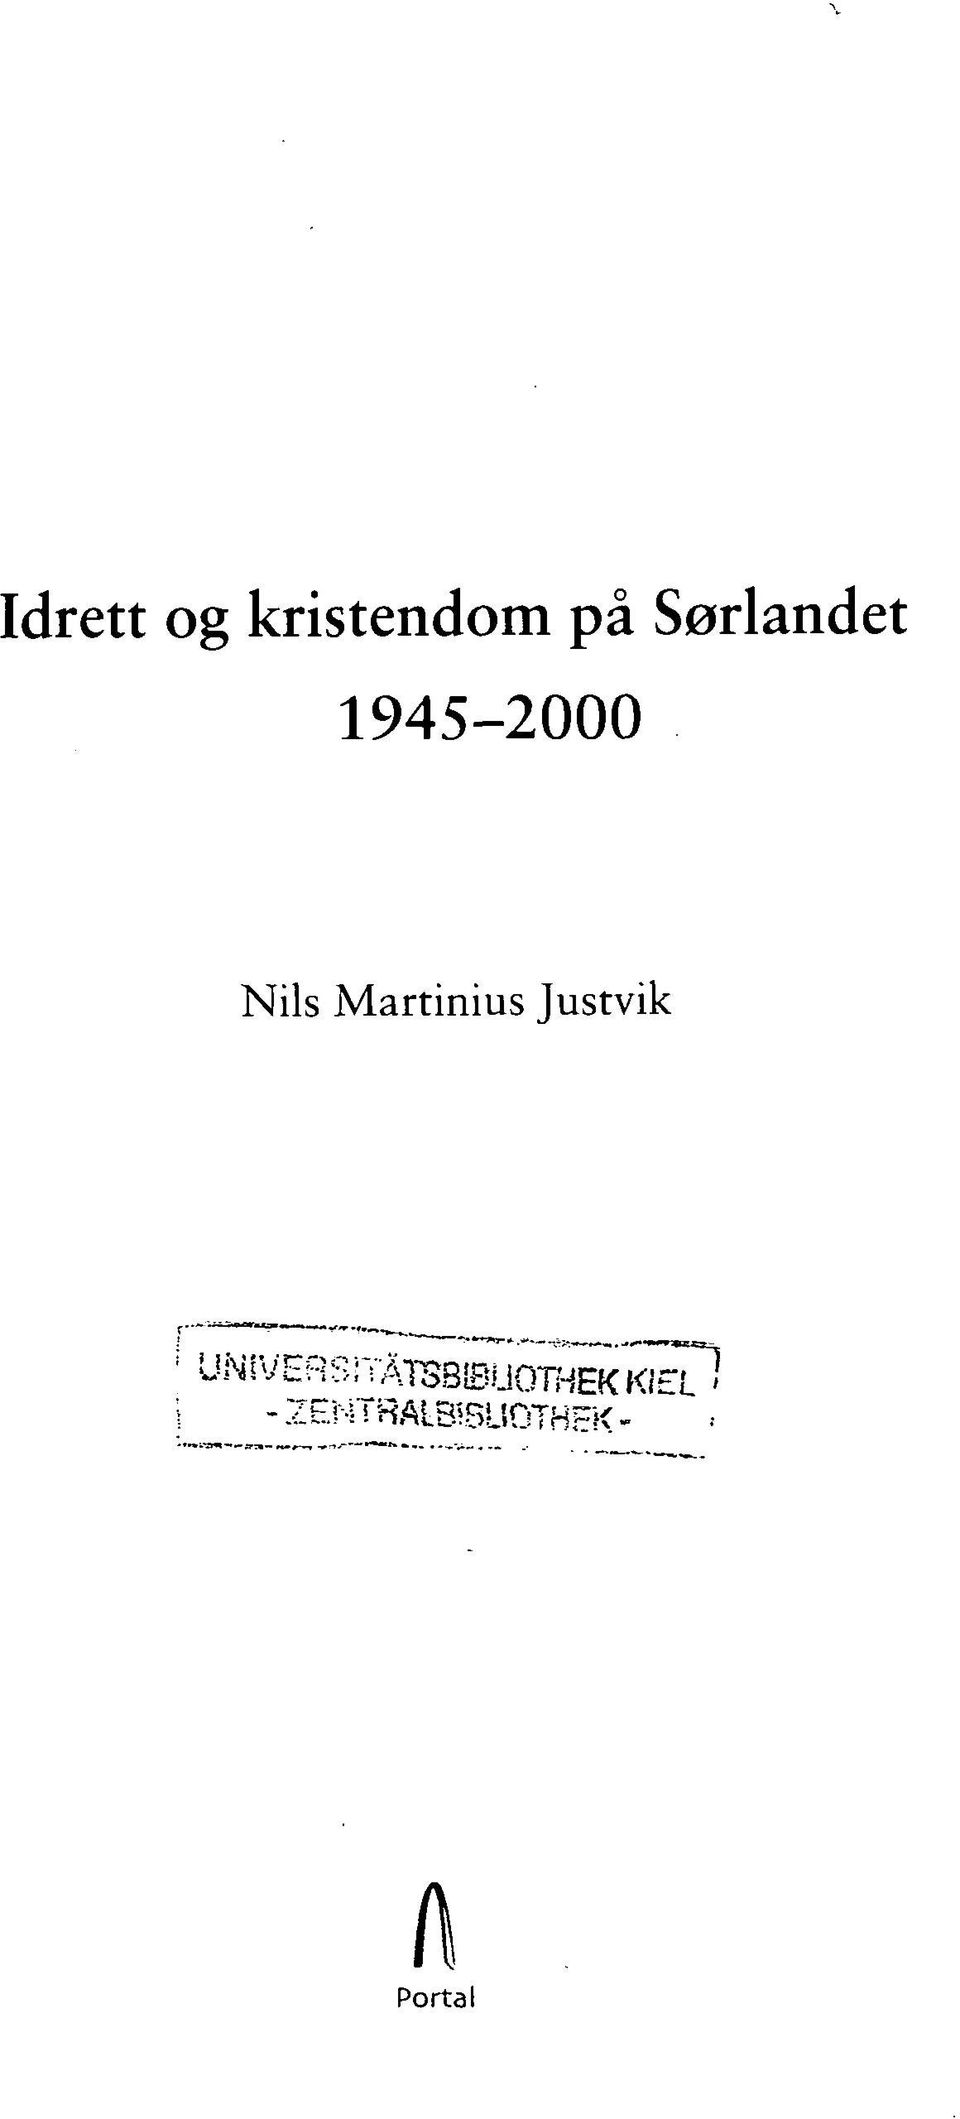 Martinius Justvik '